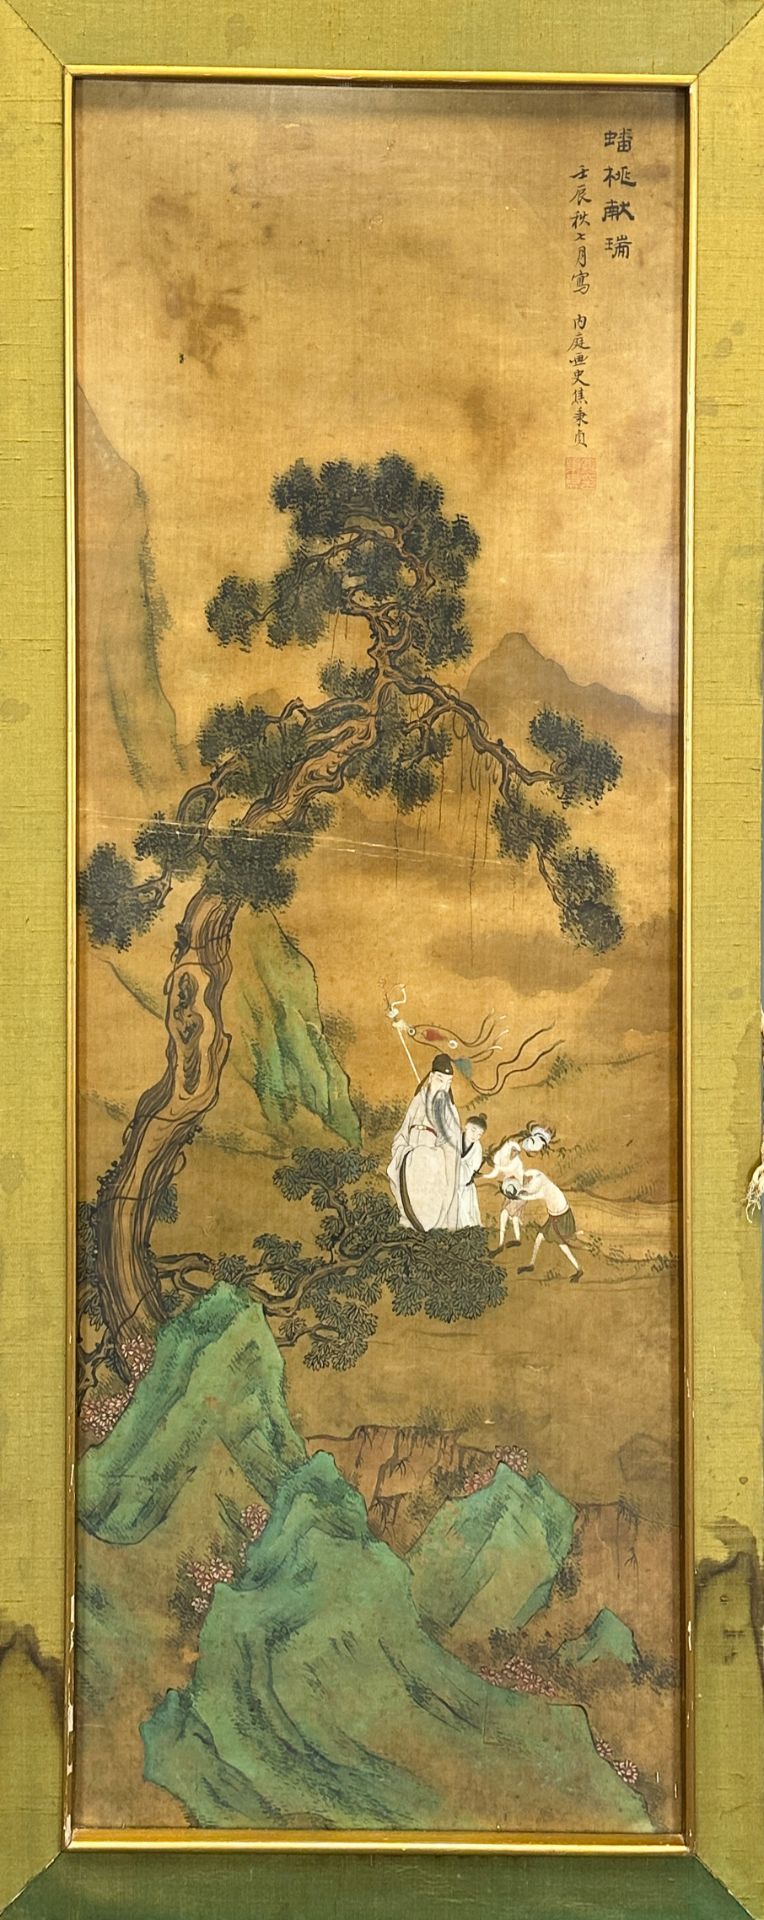 JIAO Bingzhen (1606 - 1687) zugeschrieben. Pfirsich und Glücksverheißung. - Bild 2 aus 6